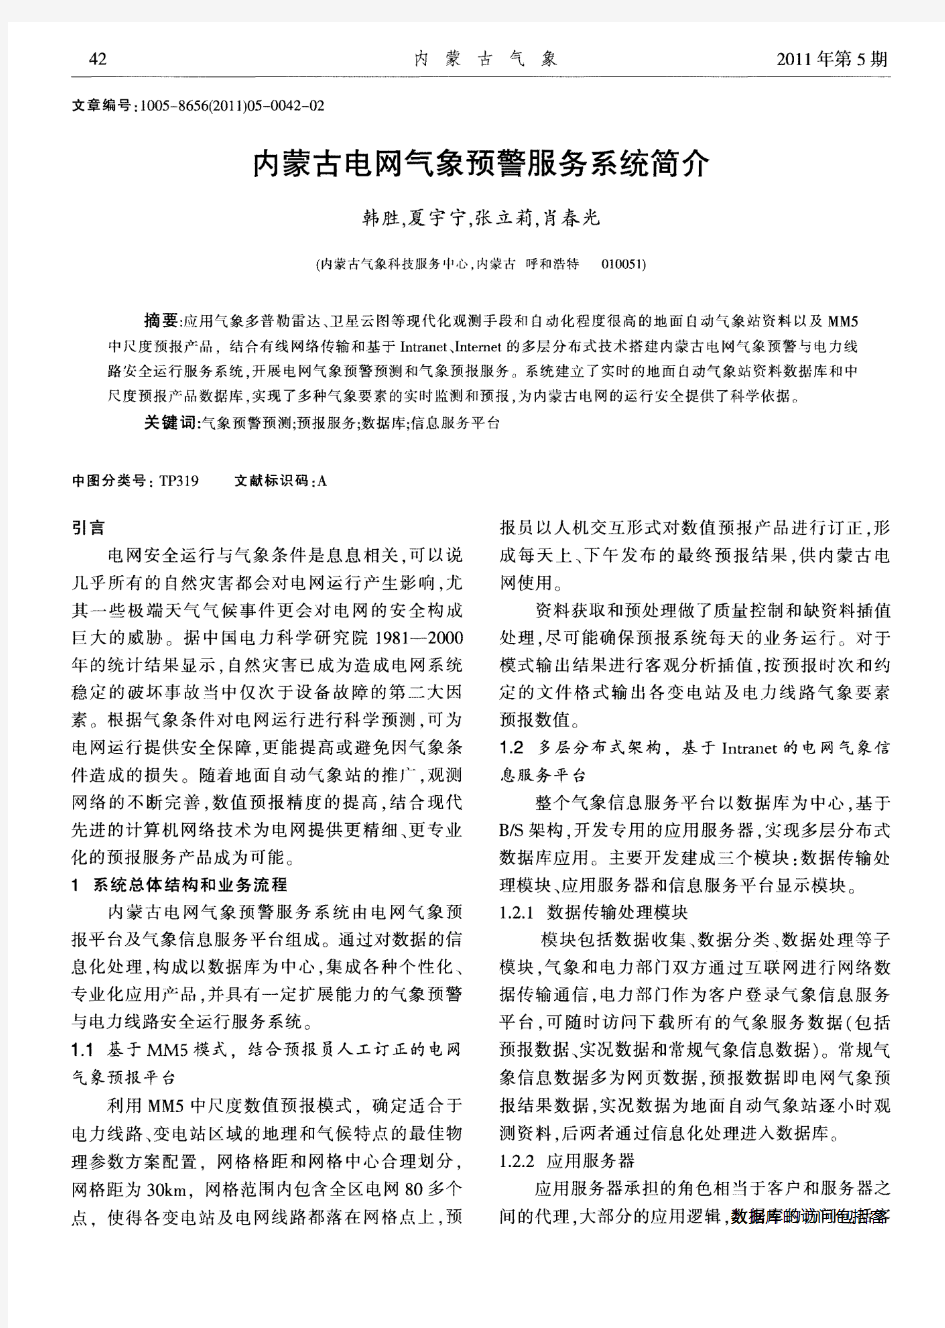 内蒙古电网气象预警服务系统简介